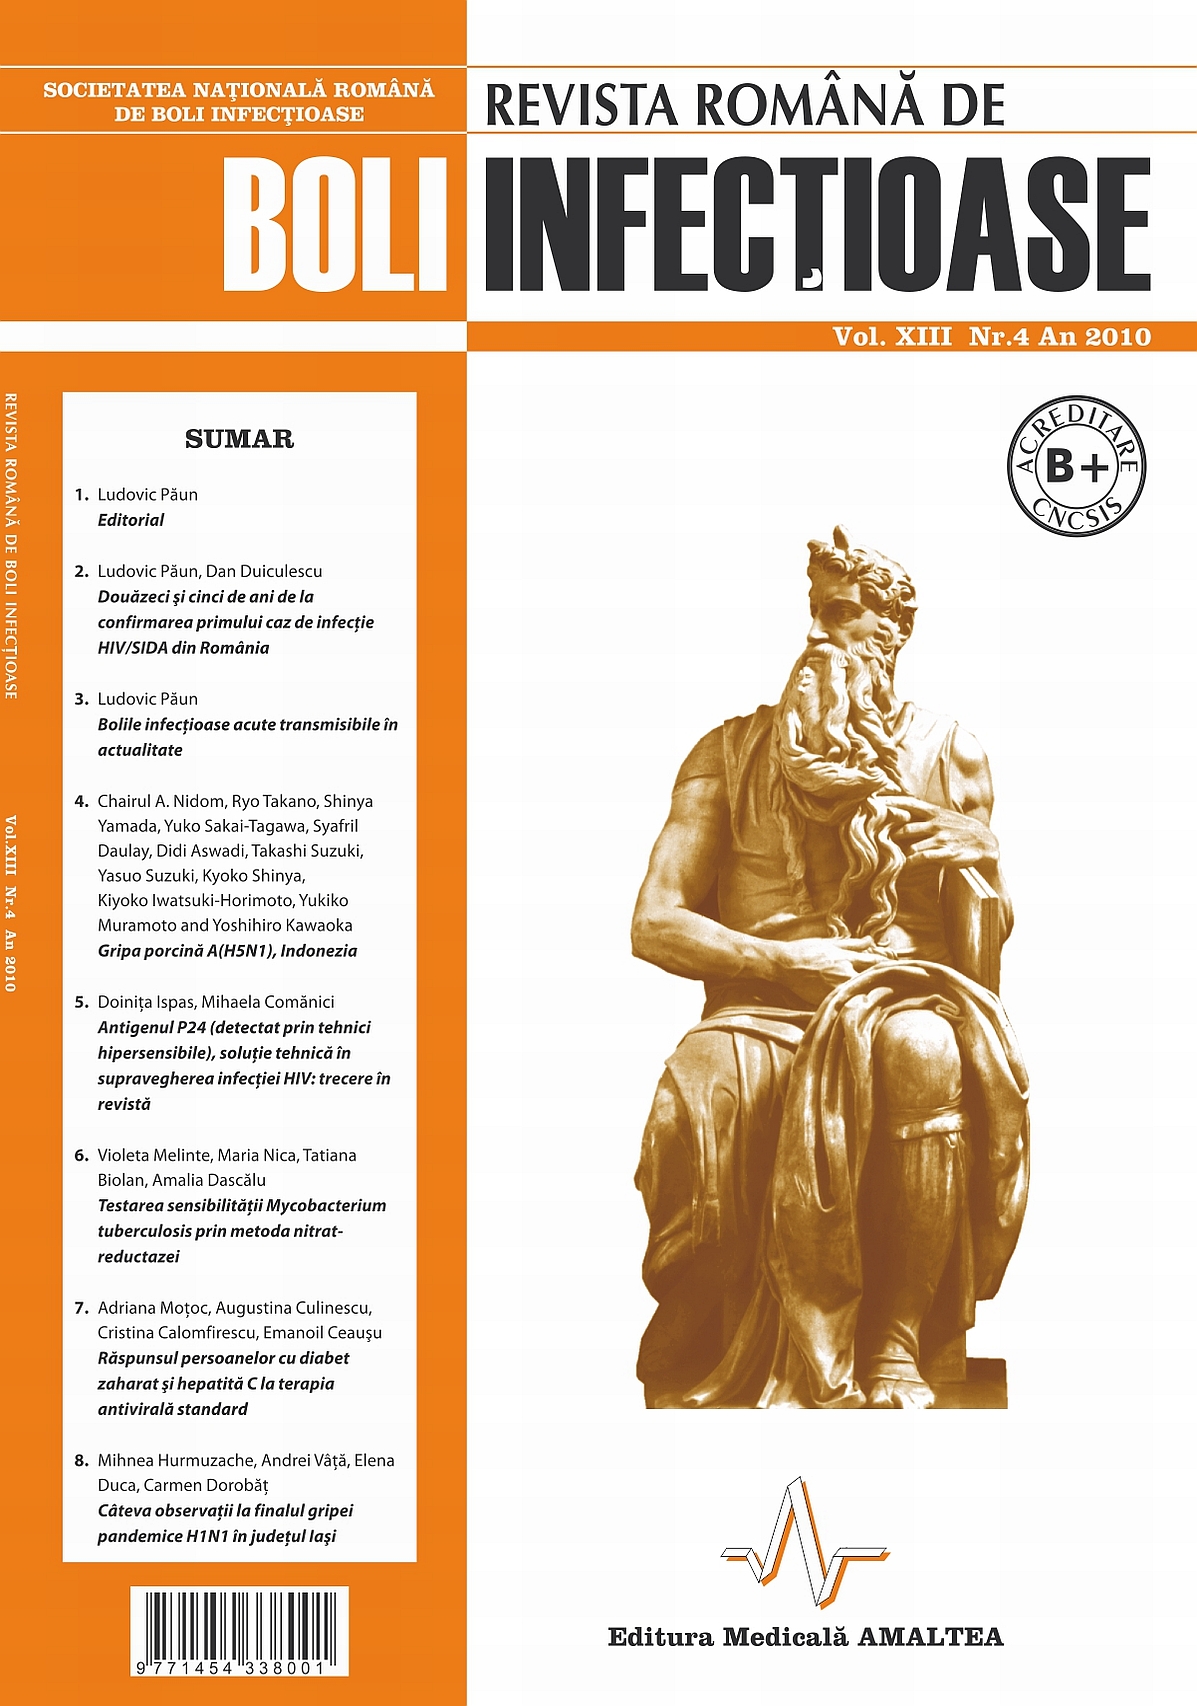 Revista Romana de Boli Infectioase | Vol. XIII, No. 4, 2010